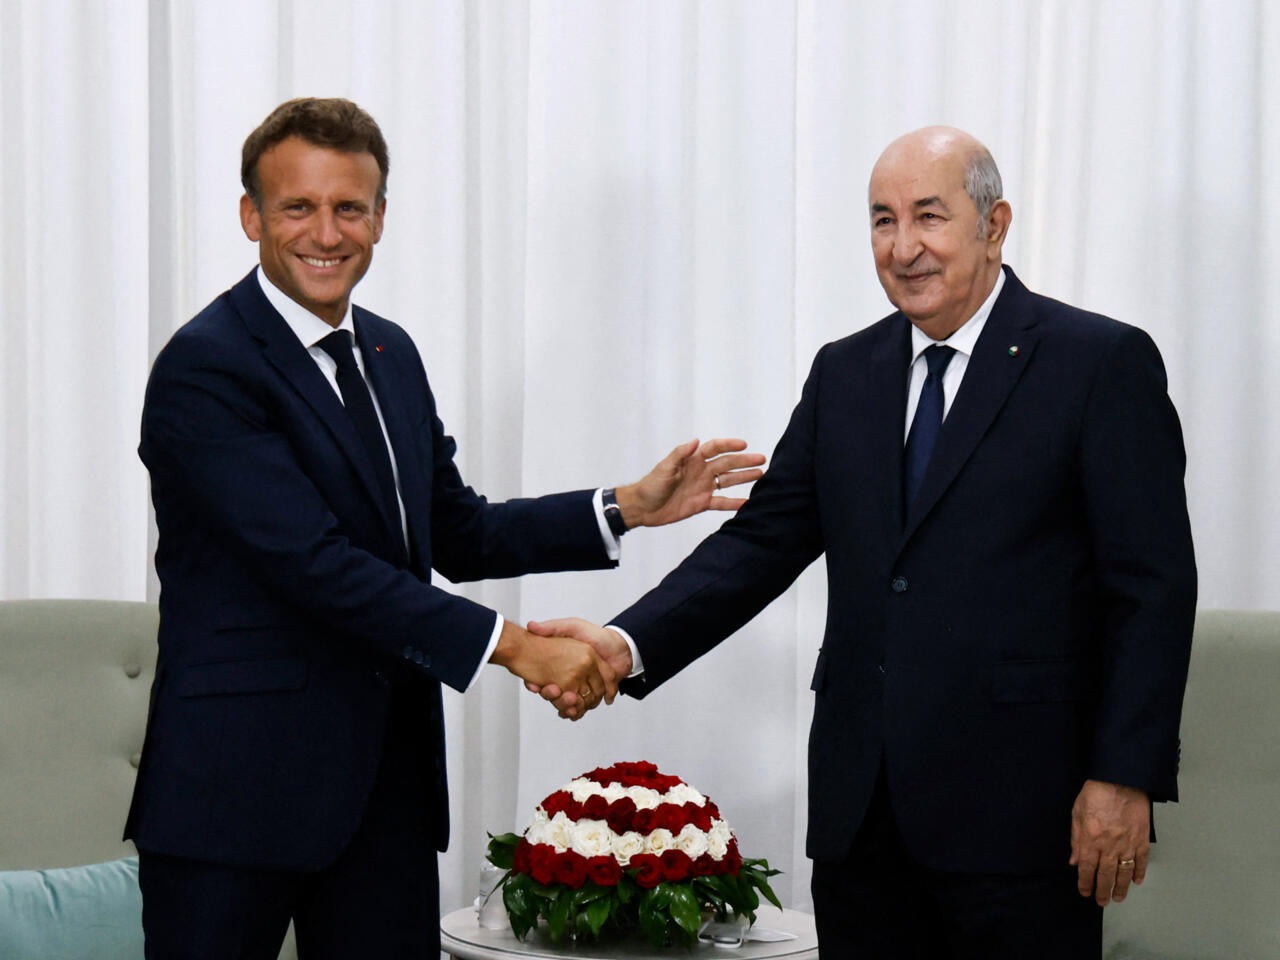 الرئيس الجزائري يلتقي نظيره الفرنسي بإيطاليا